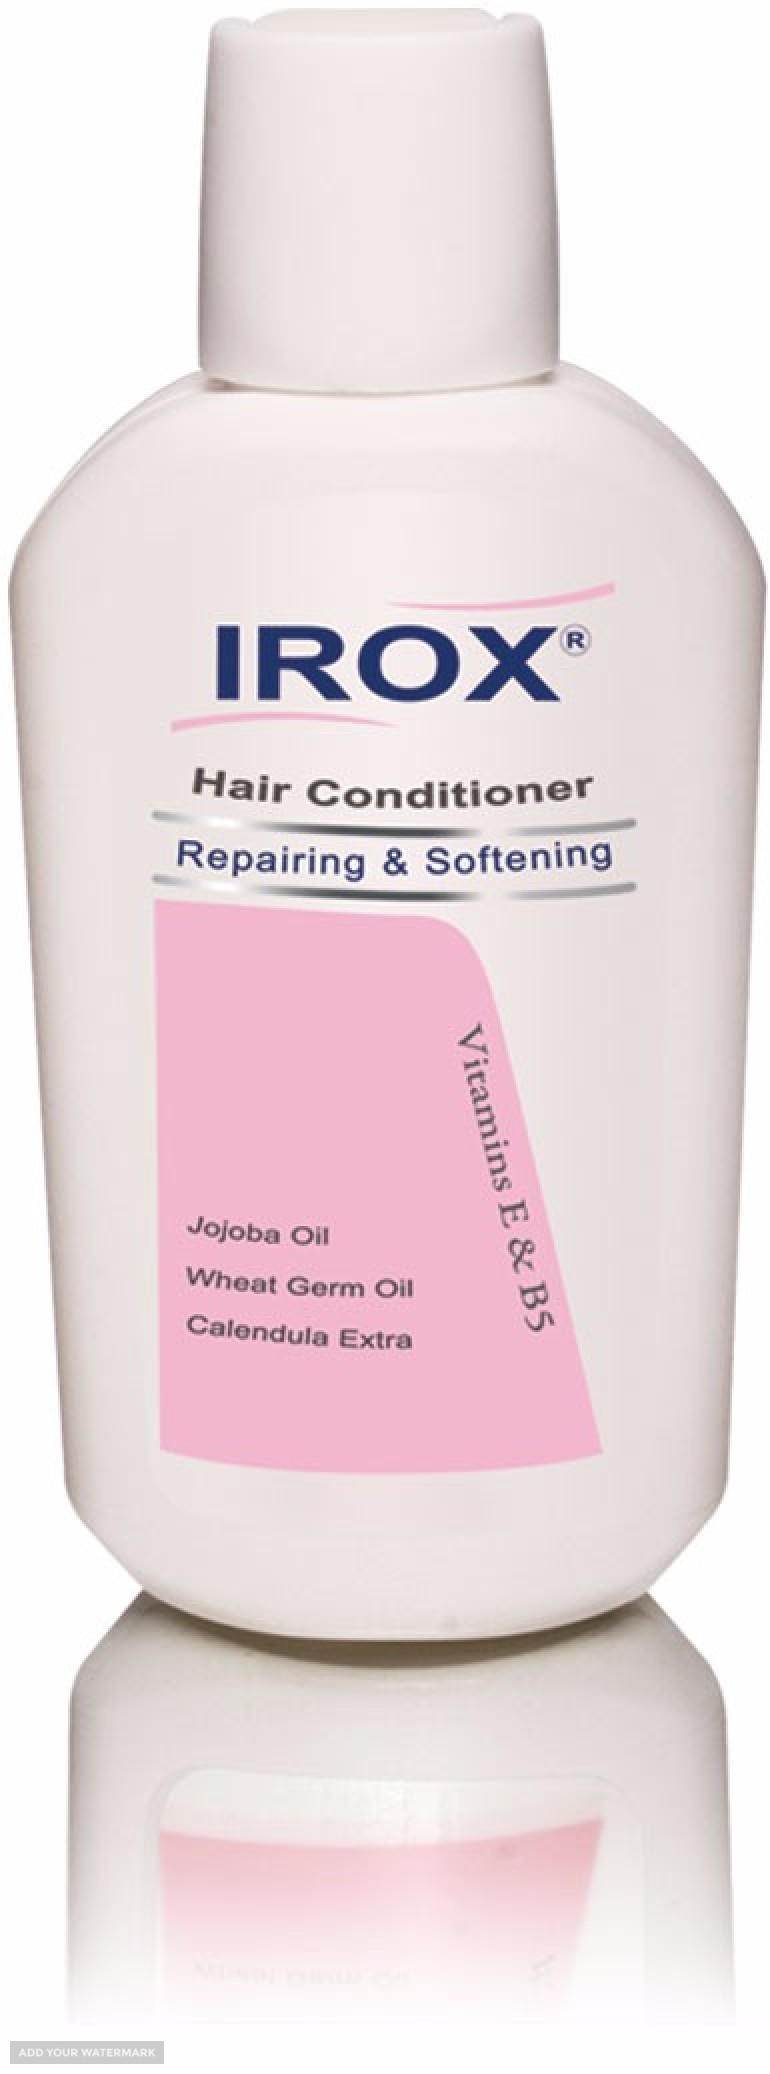 شامپو نرم کننده موی سر صادراتی ایروکس